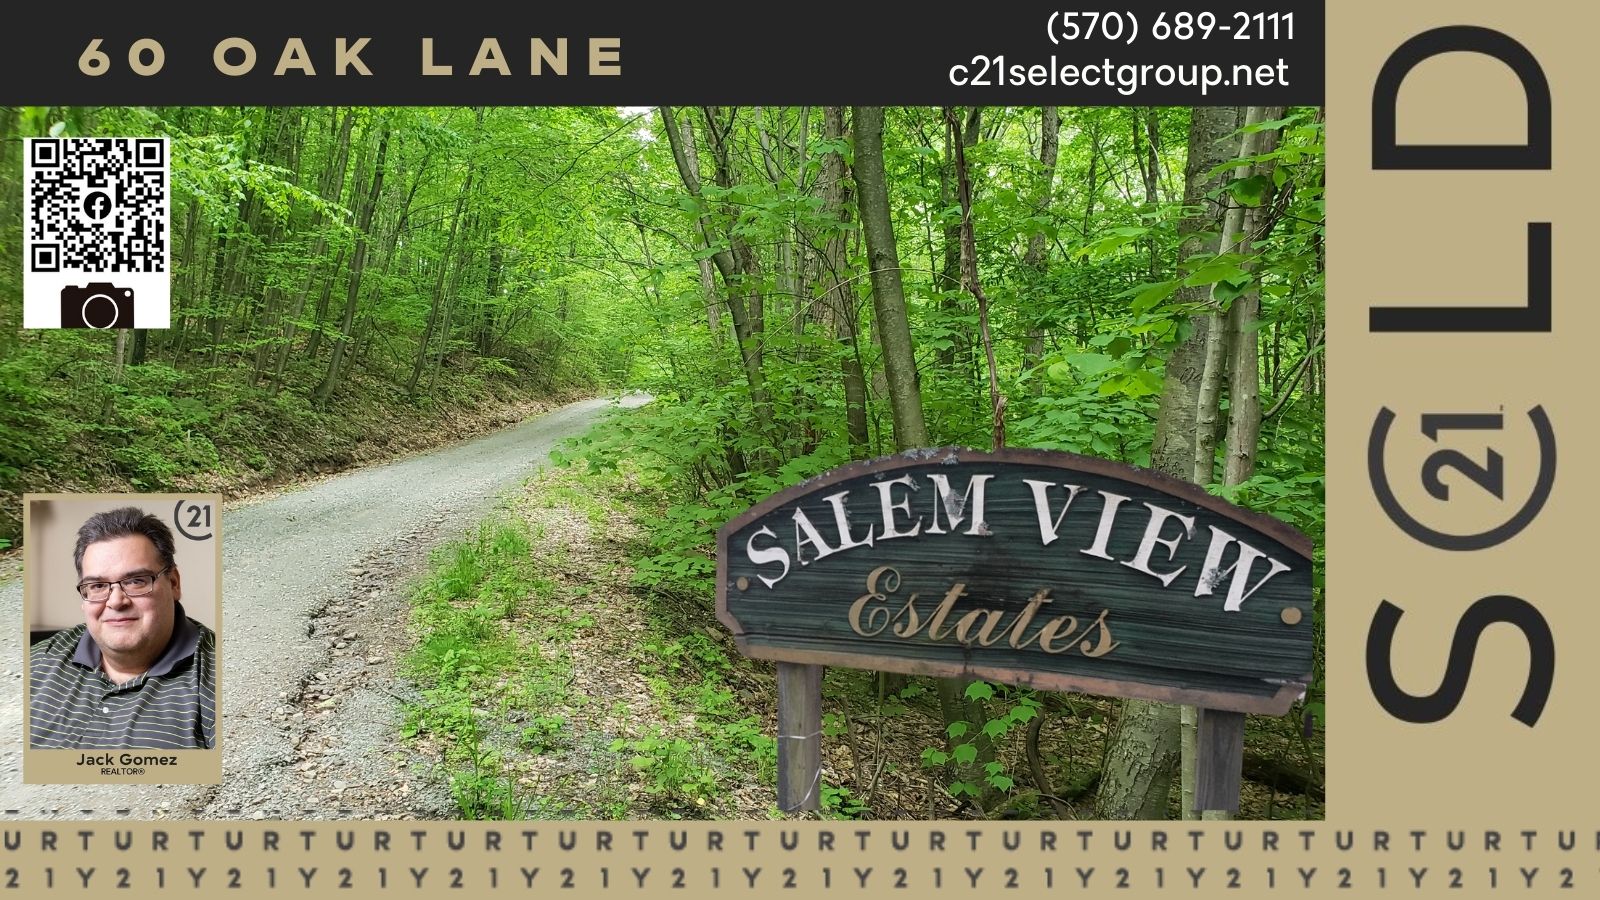 SOLD! 60 Oak Lane: Salem View Estates